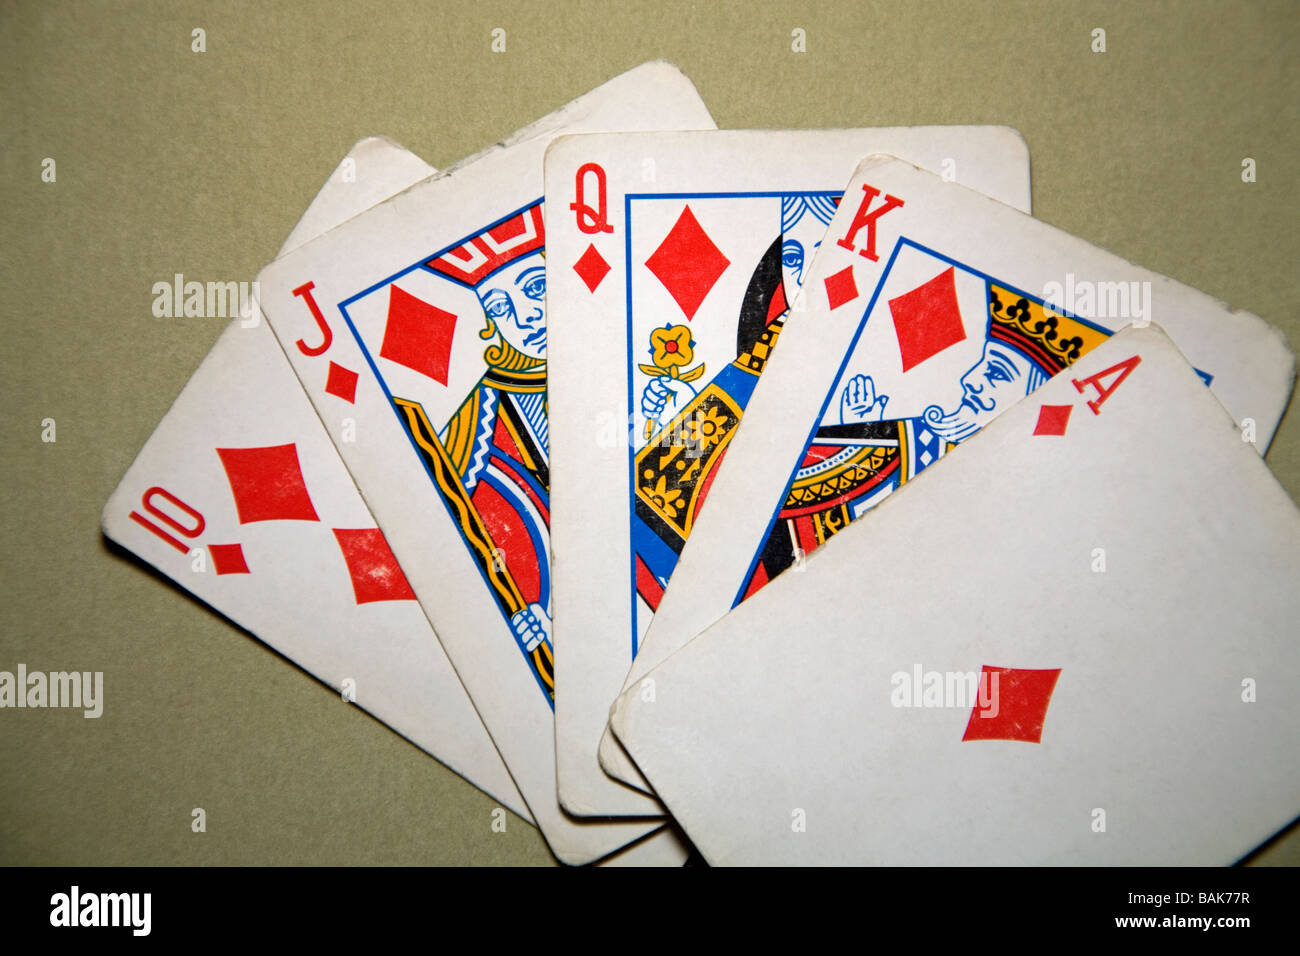 Dans le poker une Quinte Flush Royale est la main highestcard un joueur peut obtenir les cartes sont as roi reine valet et dix d'un seul costume Banque D'Images